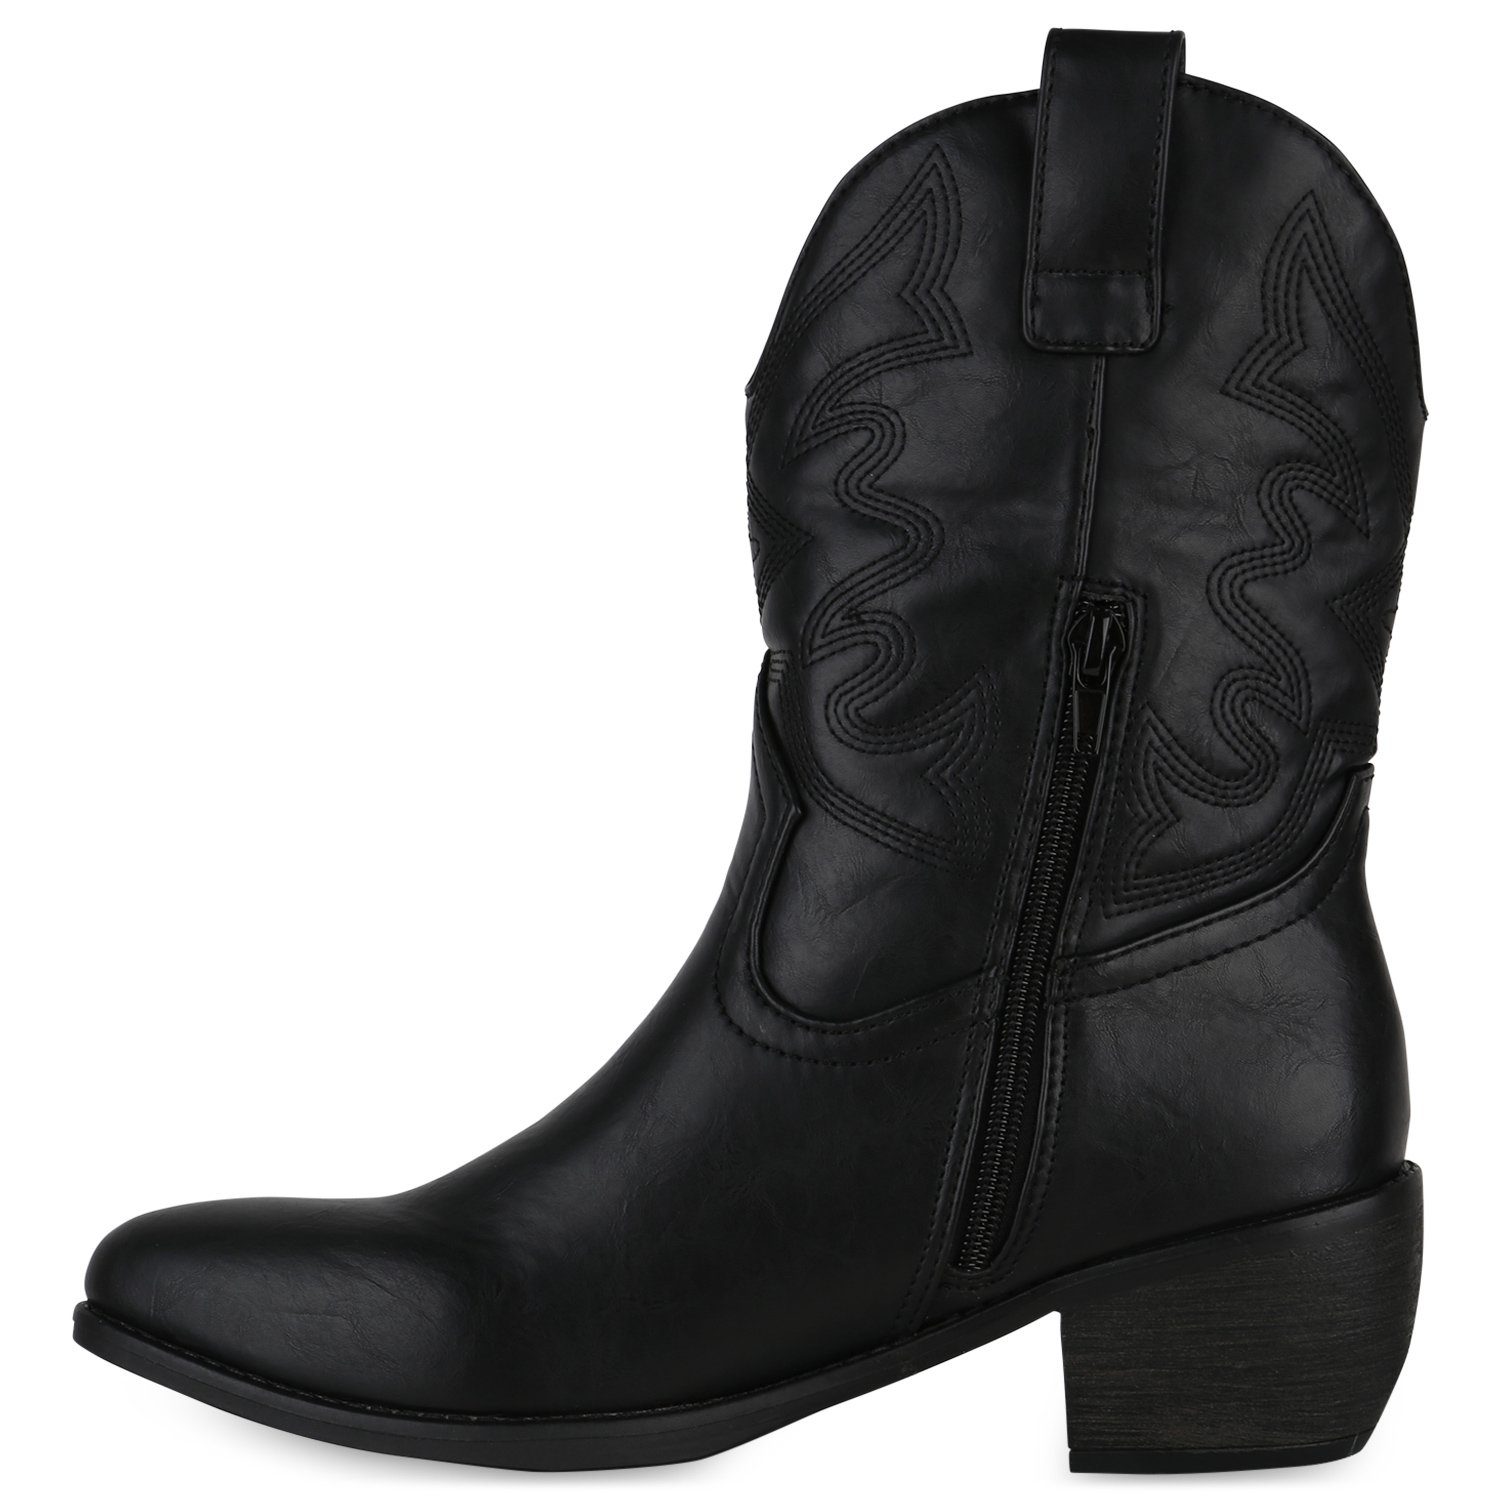 Schuhe Cowboy Schwarz Boots HILL 840534 VAN